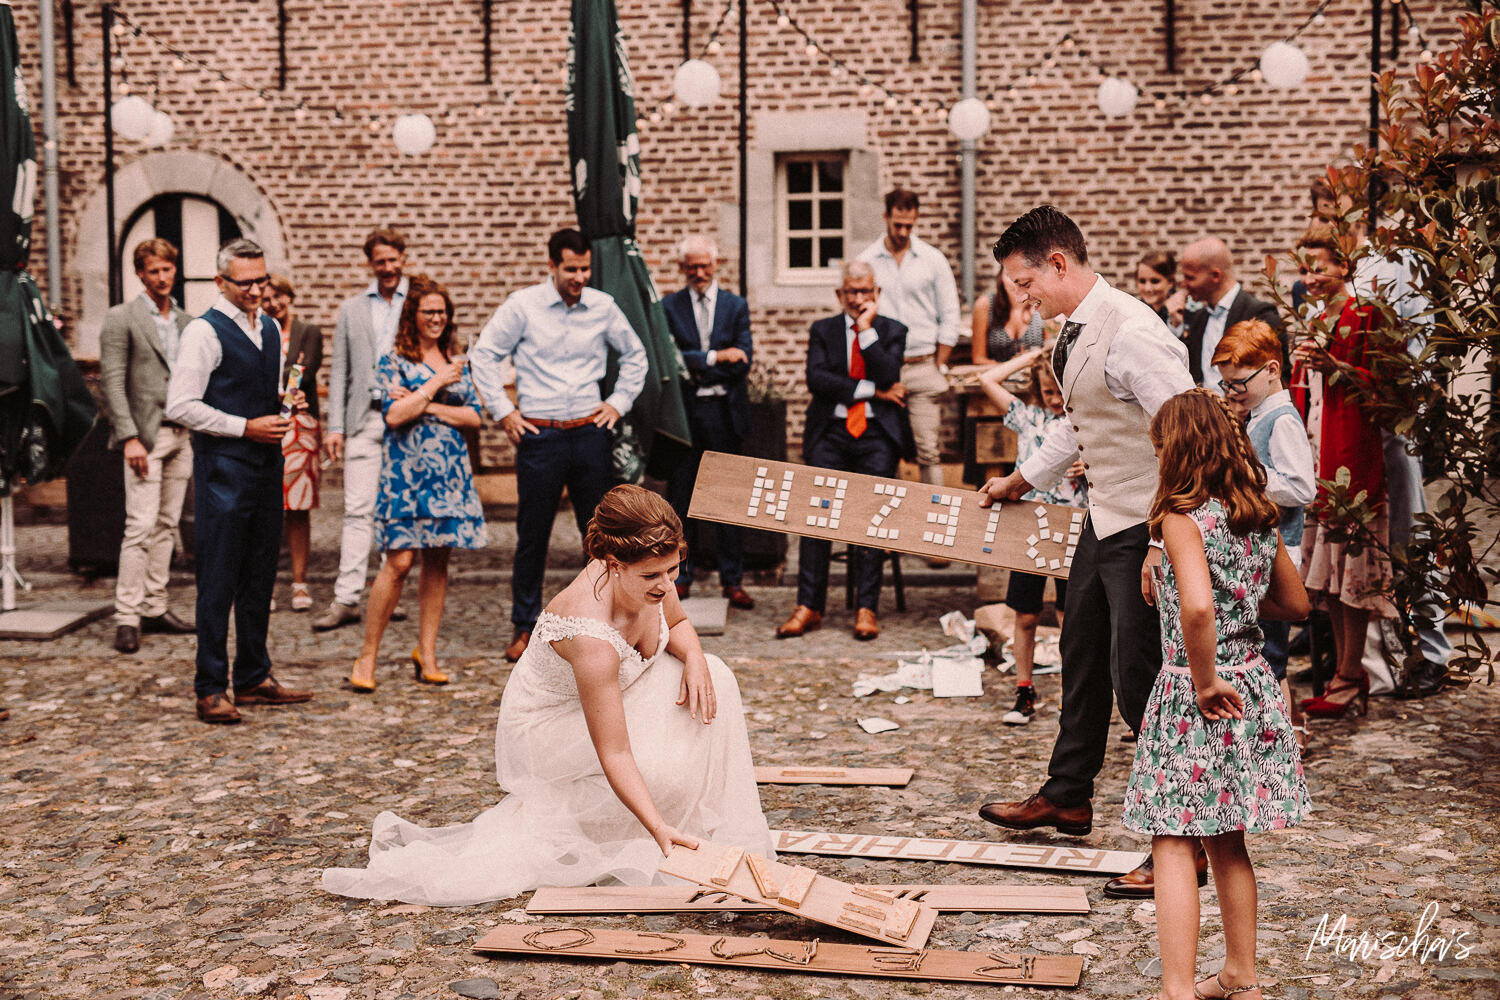 trouwen in kasteel limbricht met een bruidsfotograaf